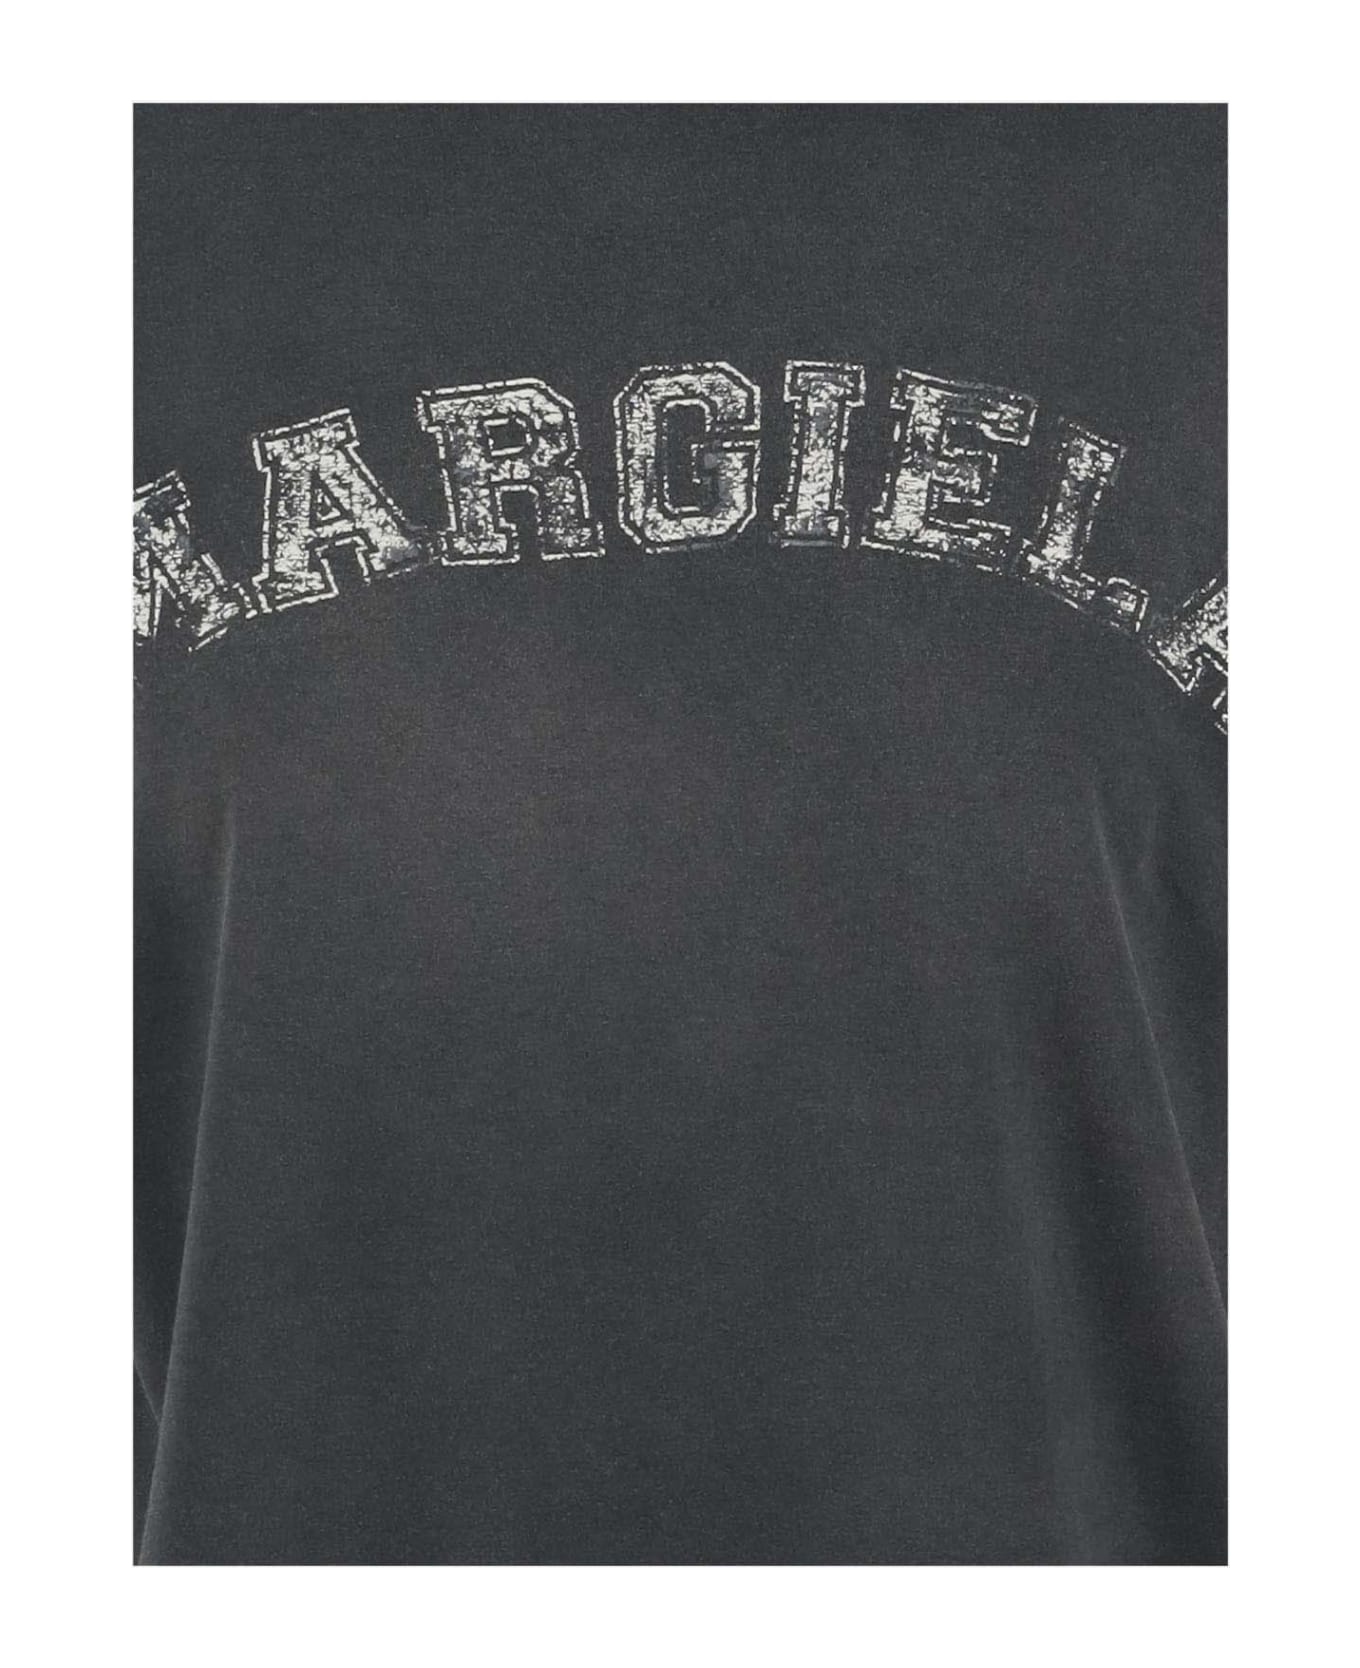 Maison Margiela T-shirt With Logo - Grey